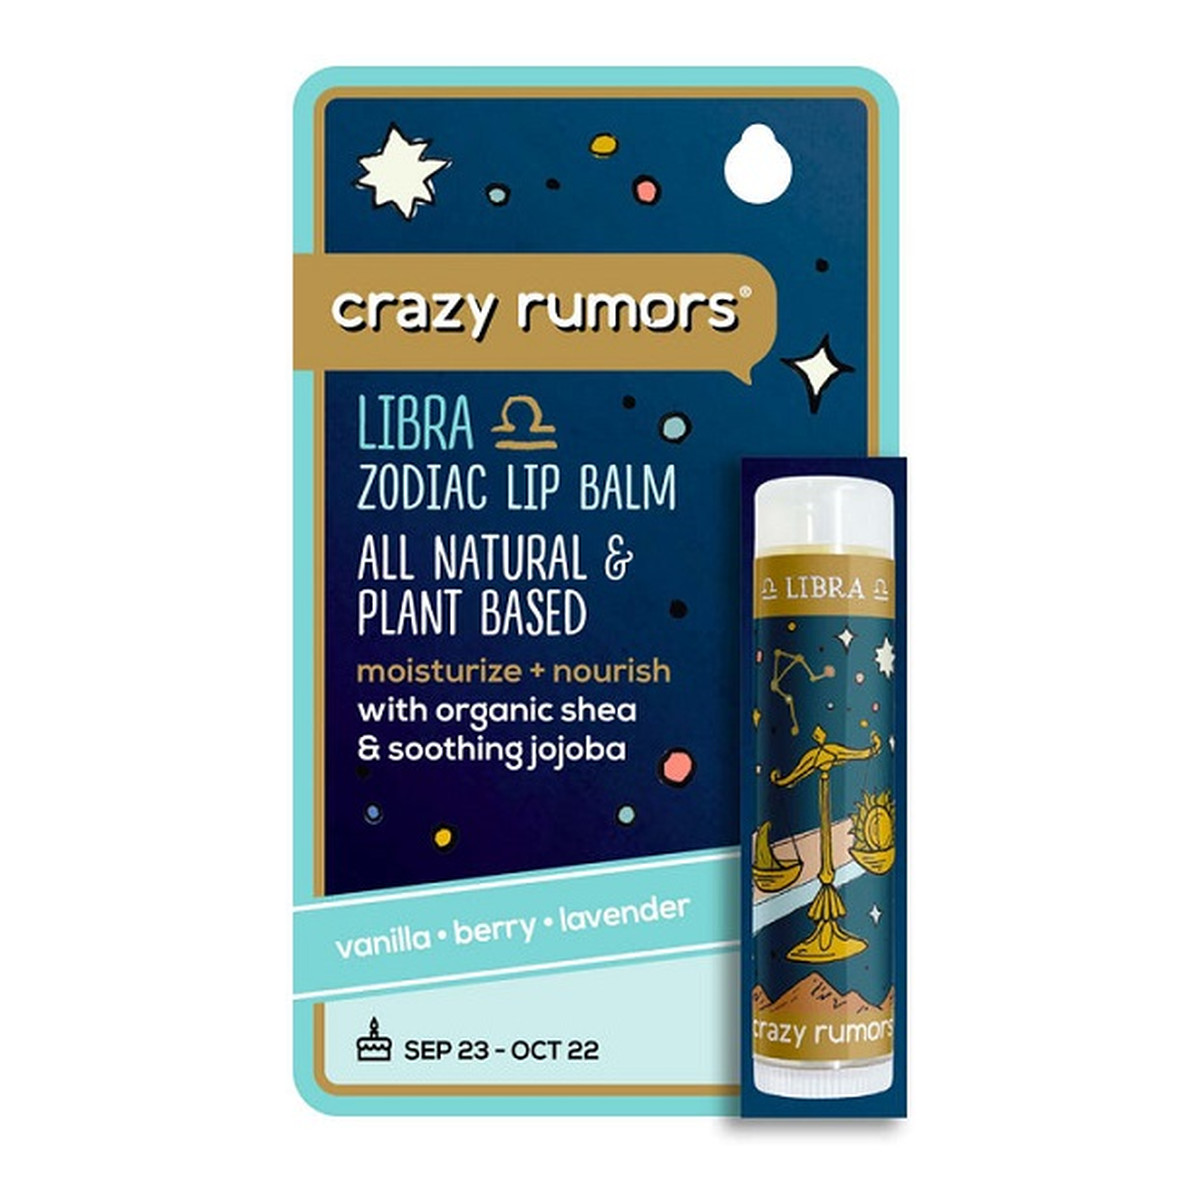 Crazy Rumors Zodiac Lip Balm Naturalny balsam do ust - Waga 4.4ml